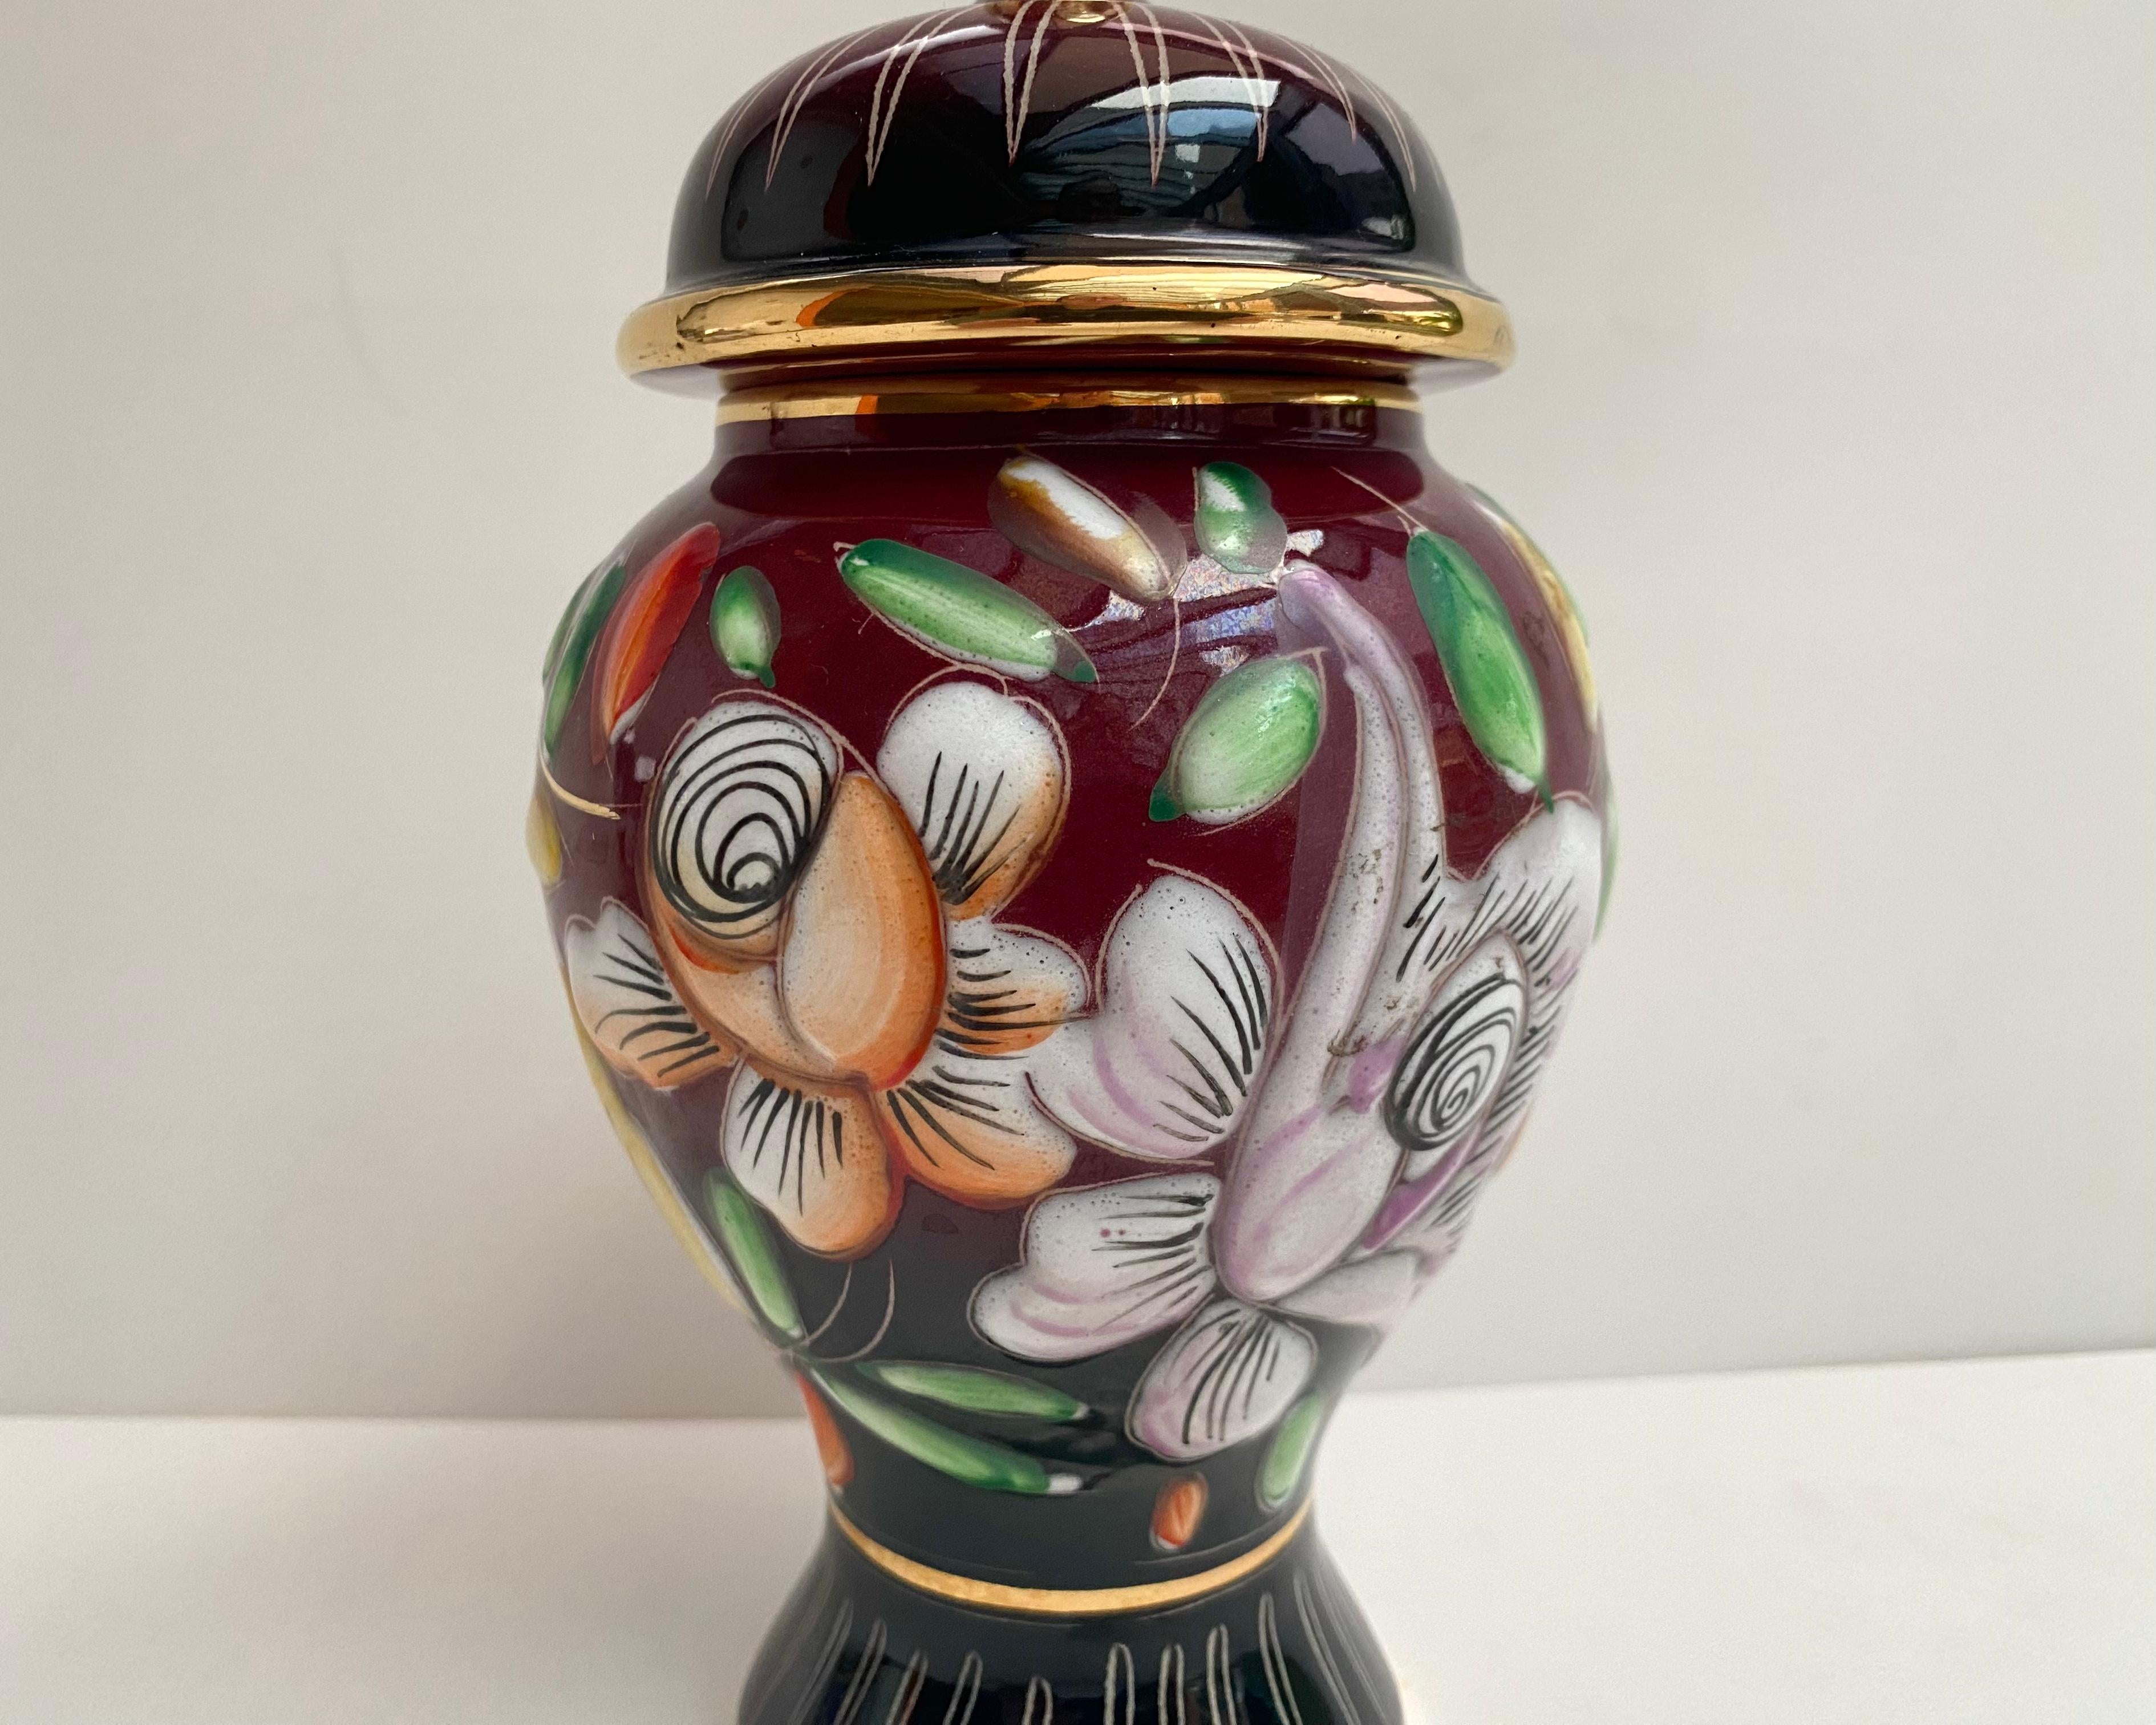 Rare Vase/Urne Vintage avec couvercle des années 1950 par Hubert Bequet en céramique précieuse avec traitement à l'or pur 24k.

Depuis les années 1950. Fabriqué en Belgique.

Entièrement réalisée à la main par des maîtres artisans, elle présente une